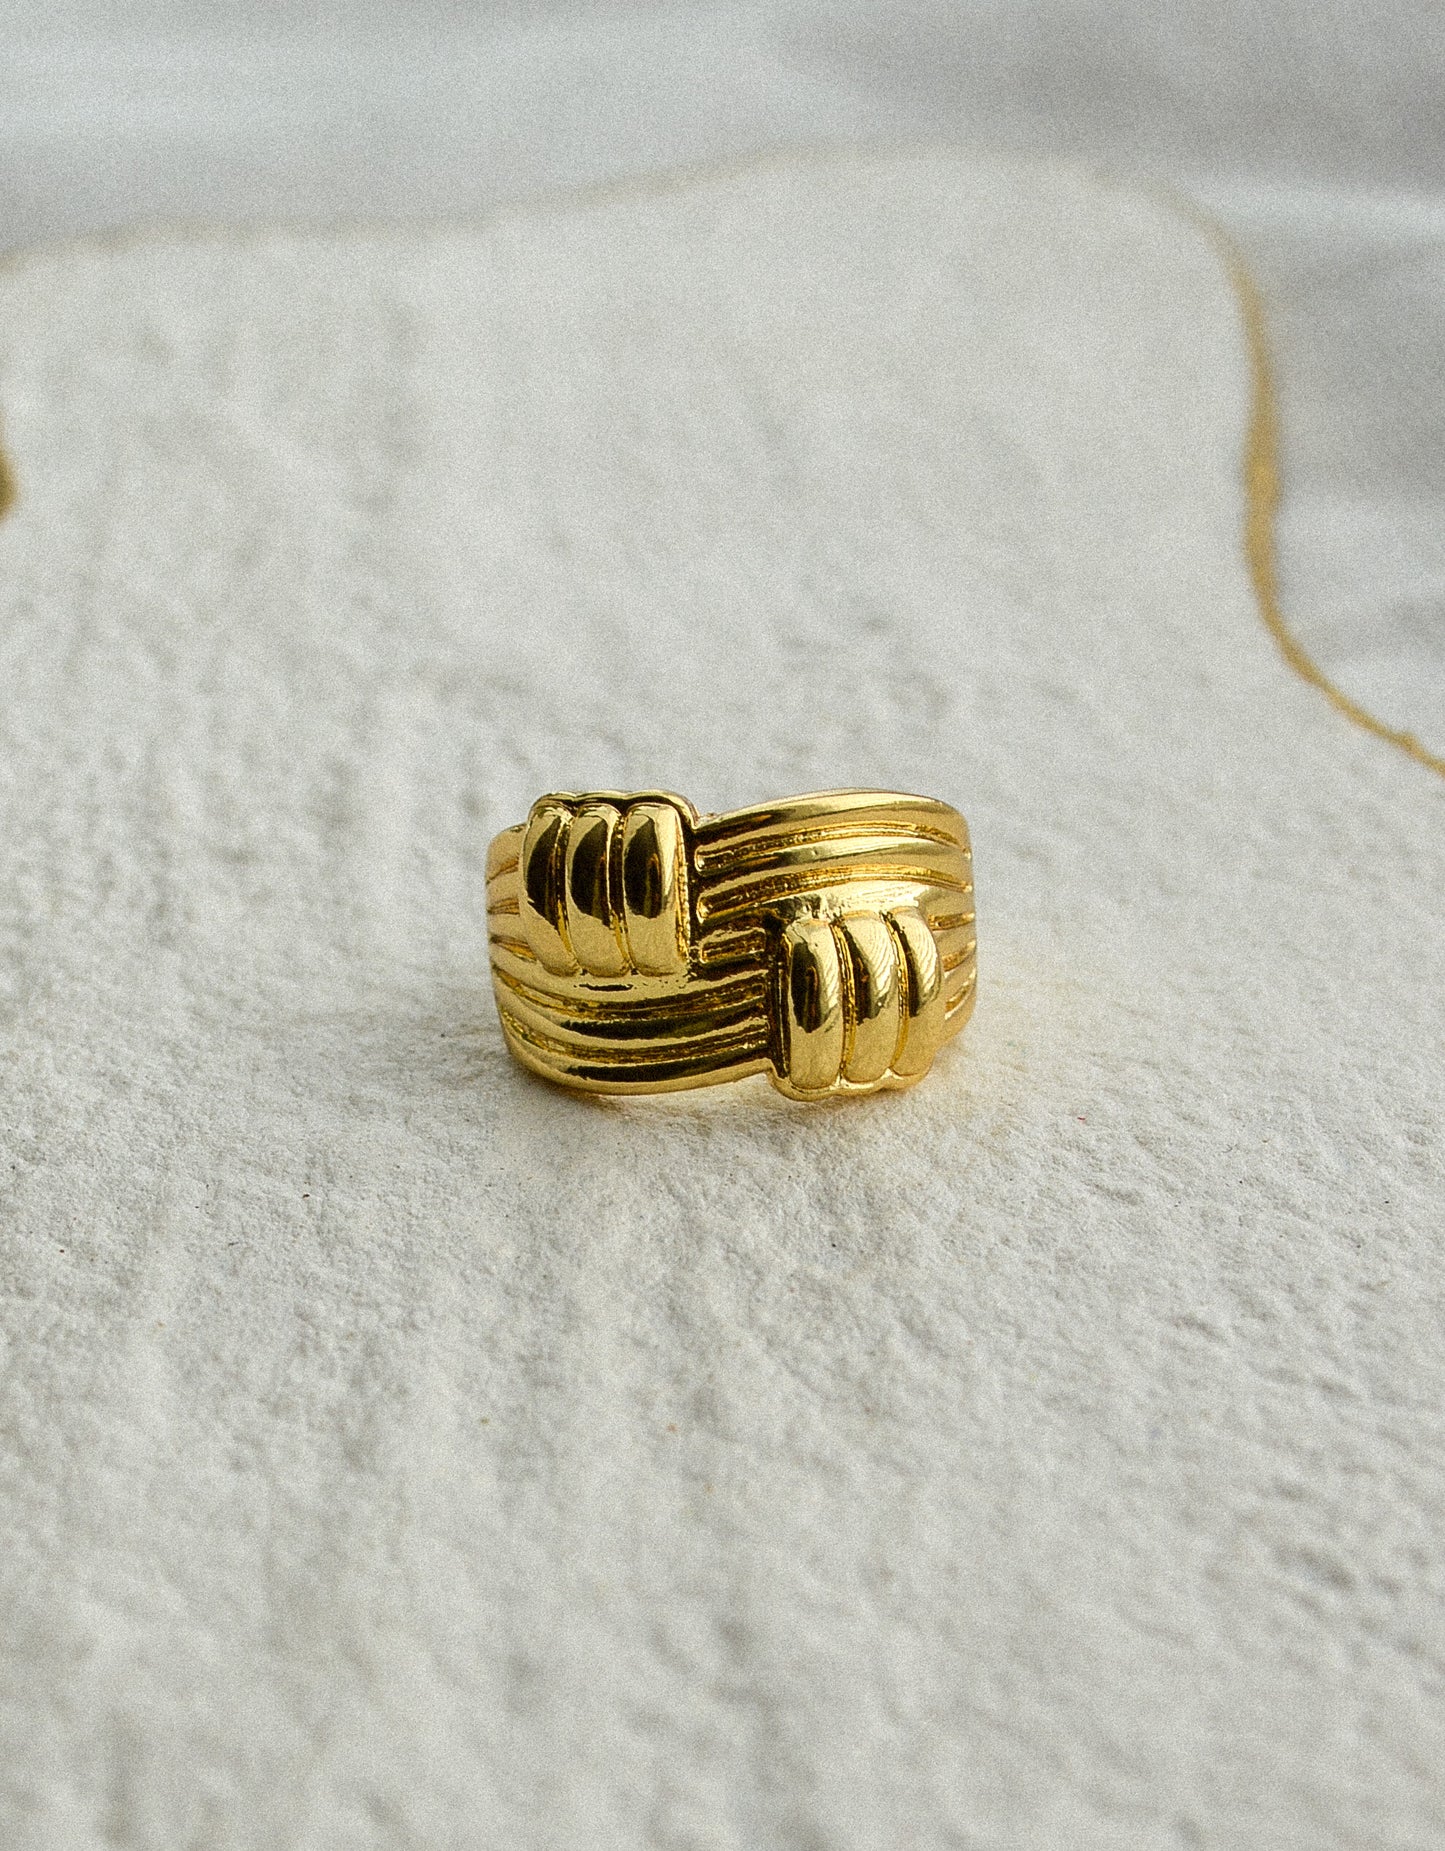 18k gold filled adjustable textured ring